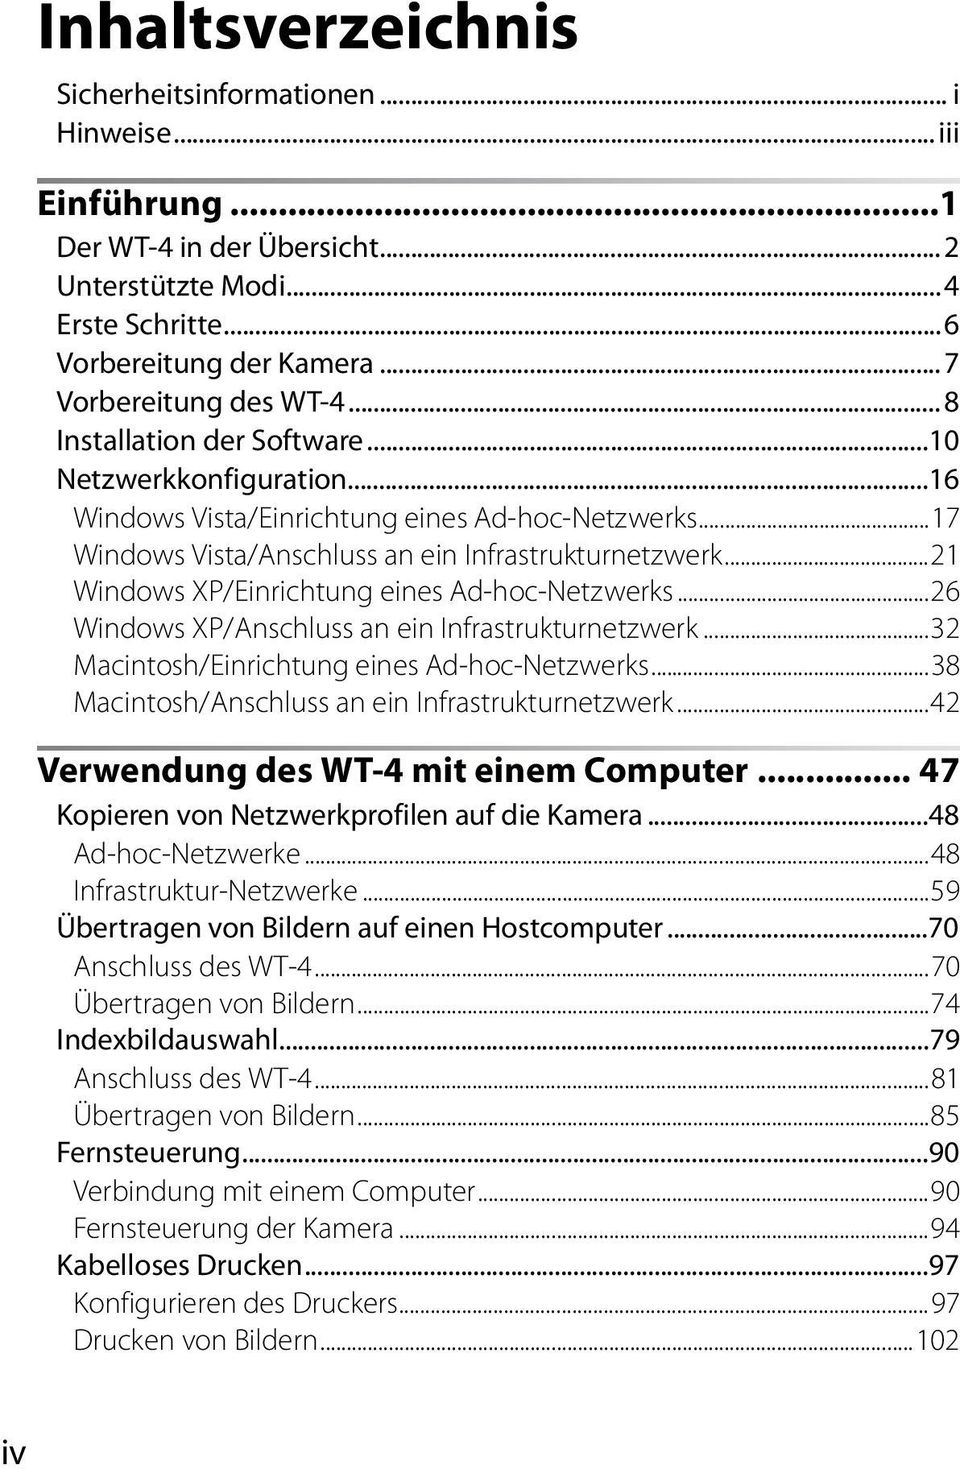 ..21 Windows XP/Einrichtung eines Ad-hoc-Netzwerks...26 Windows XP/Anschluss an ein Infrastrukturnetzwerk...32 Macintosh/Einrichtung eines Ad-hoc-Netzwerks.